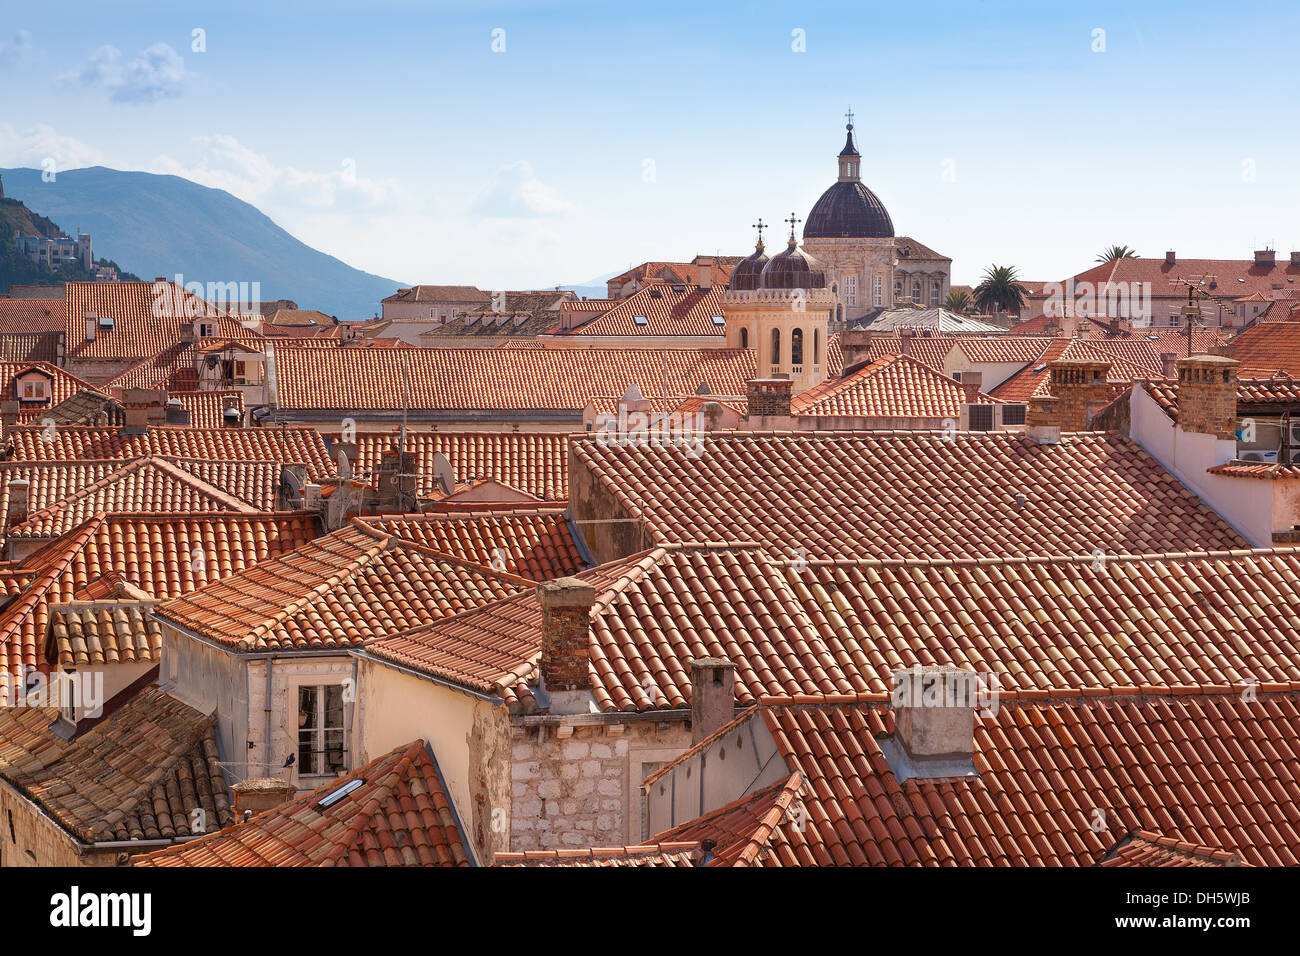 Vue sur les toits de Dubrovnik avec l'église et la tour de l'horloge Banque D'Images